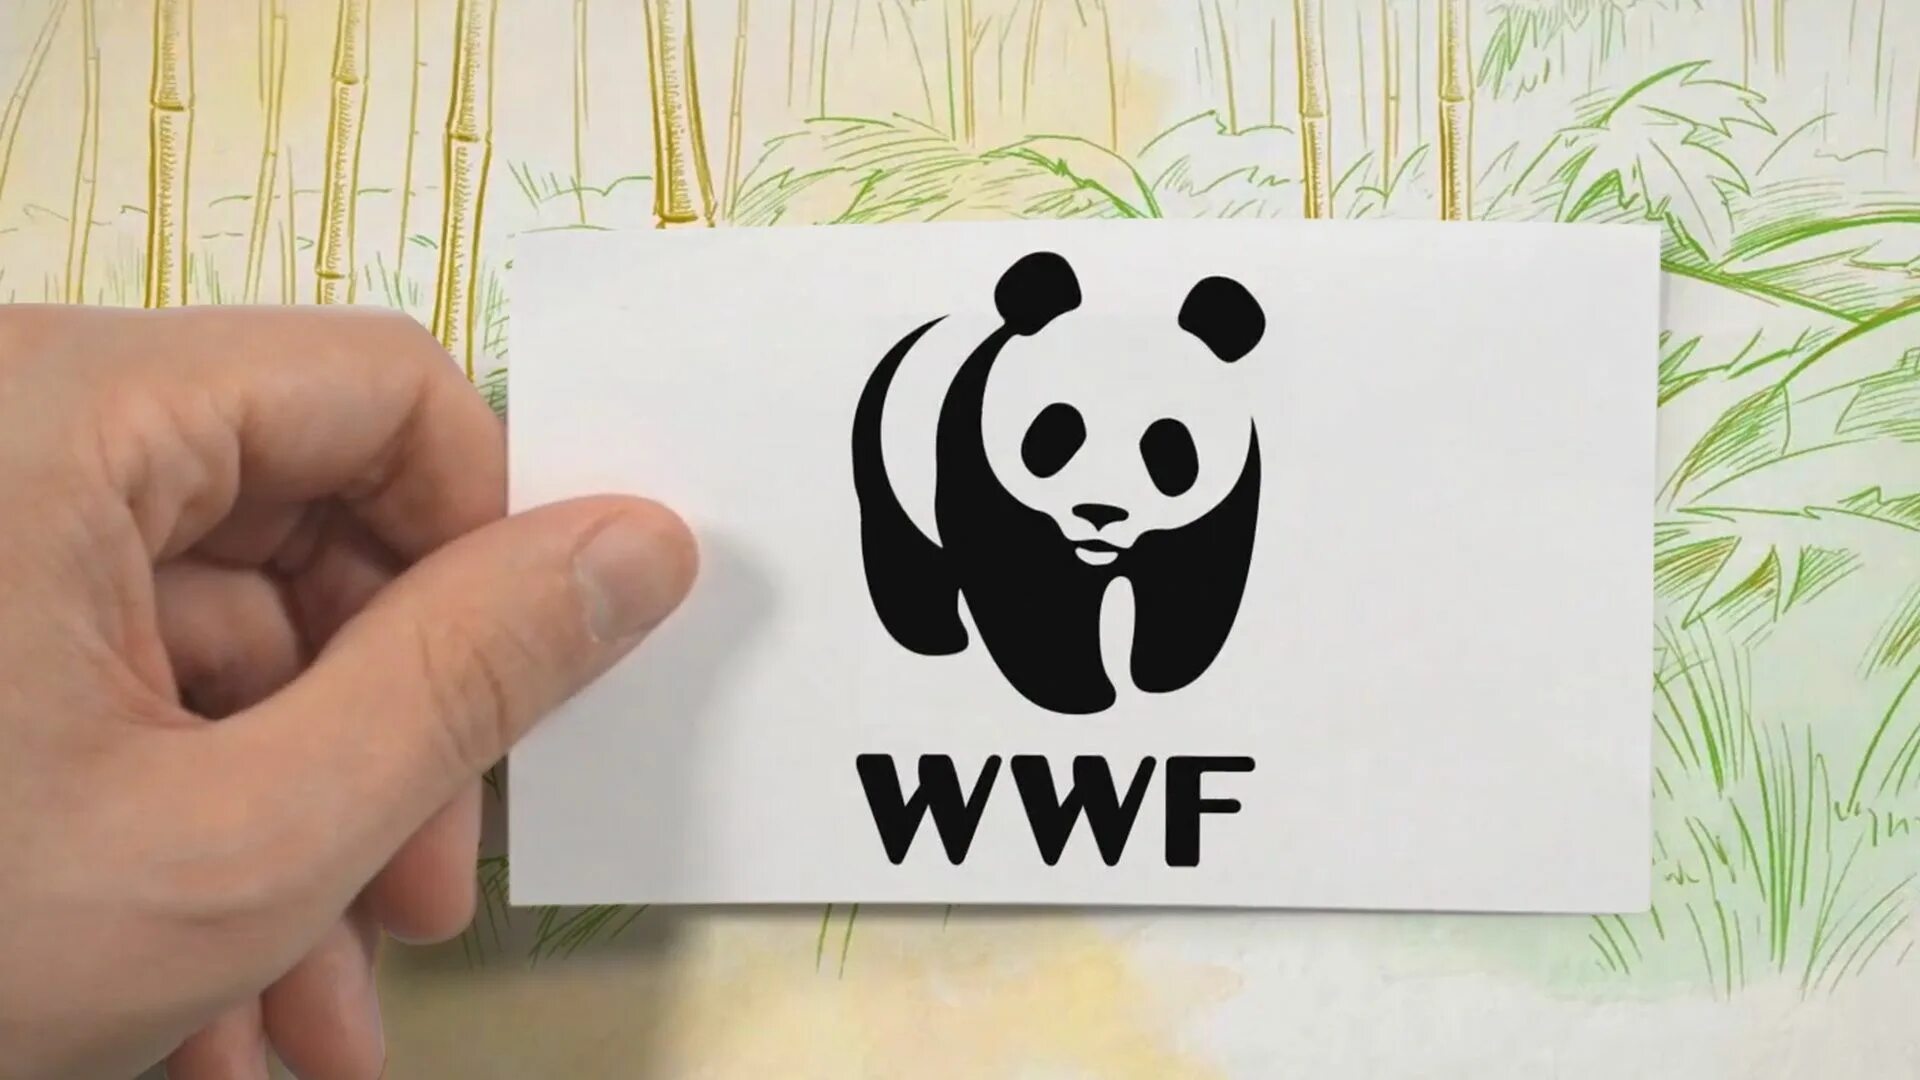 The world wildlife fund is. WWF. WWF логотип. Знак WWF Панда. WWF album Stickers.